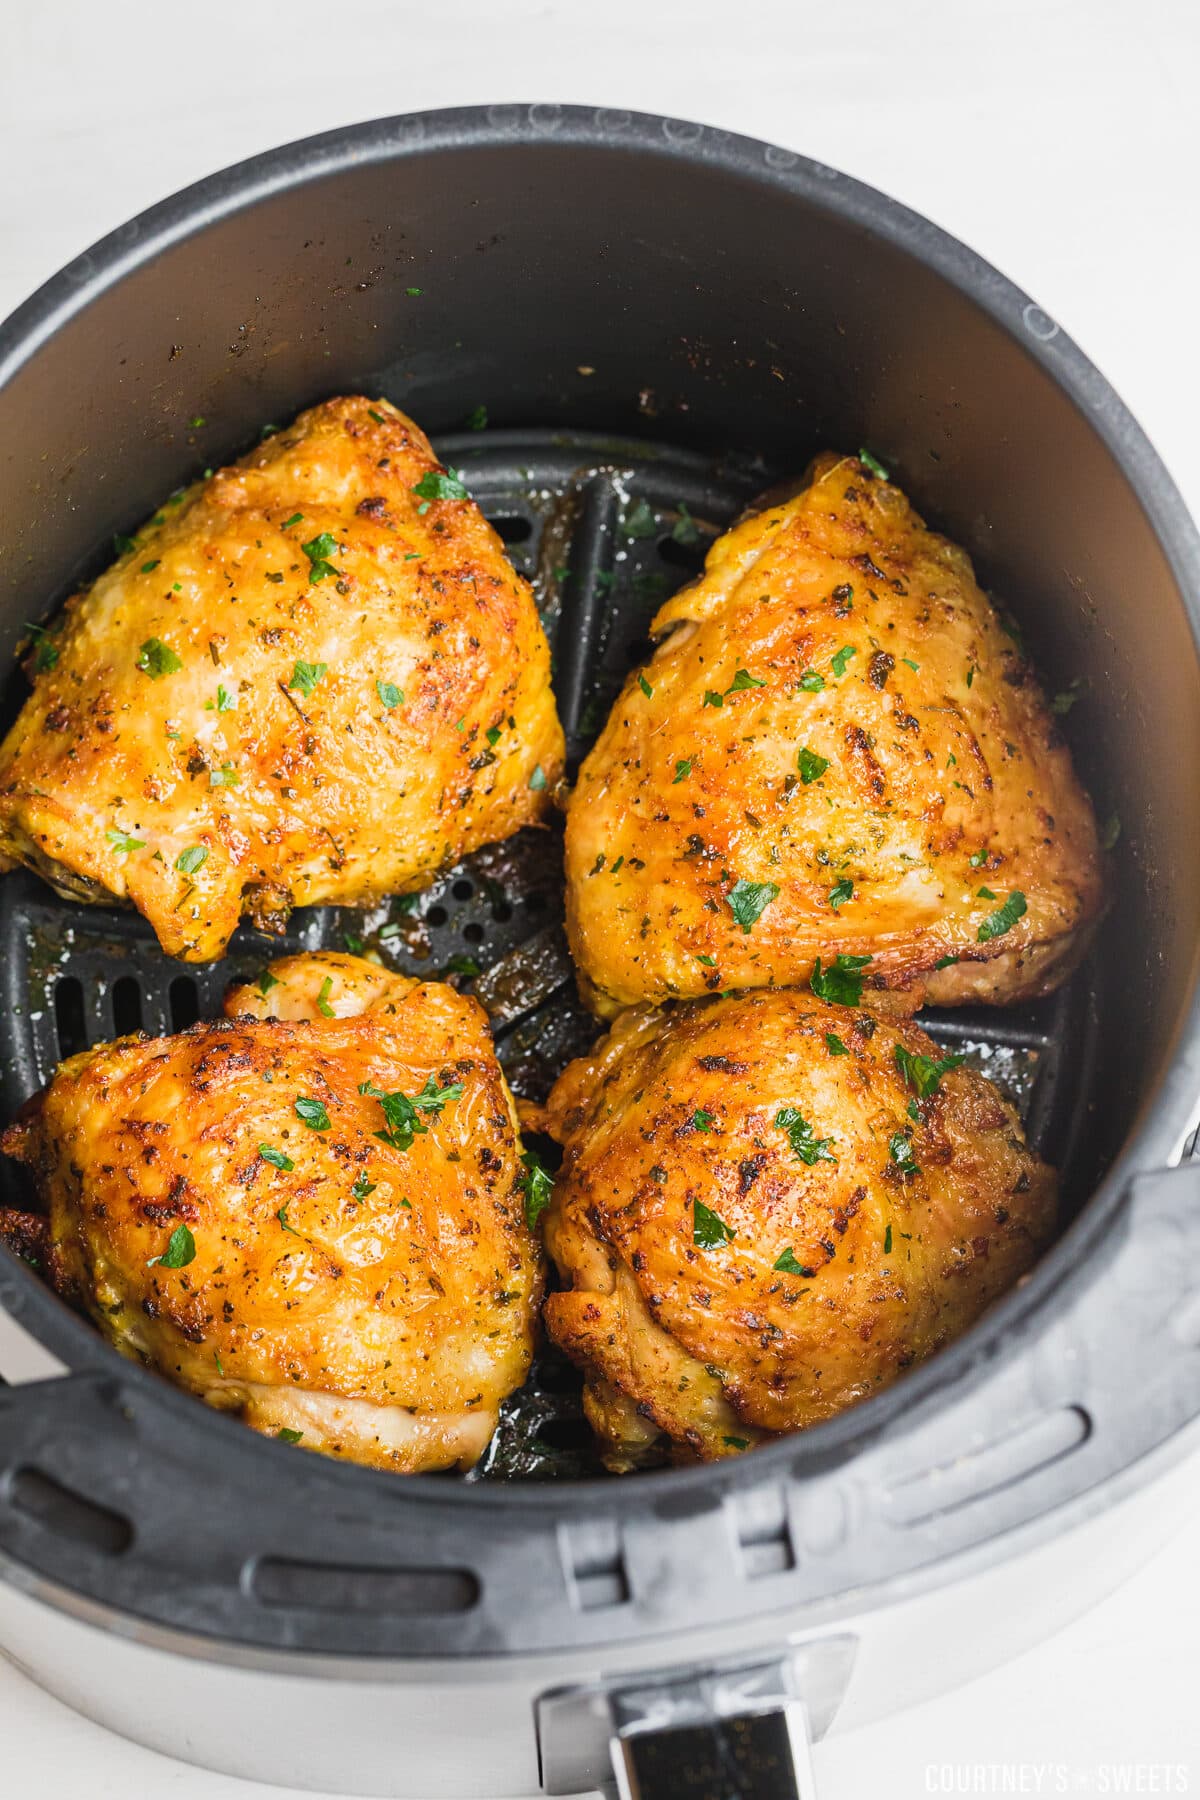 crispy chicken thighs in air fryer basket with parsley garnish.